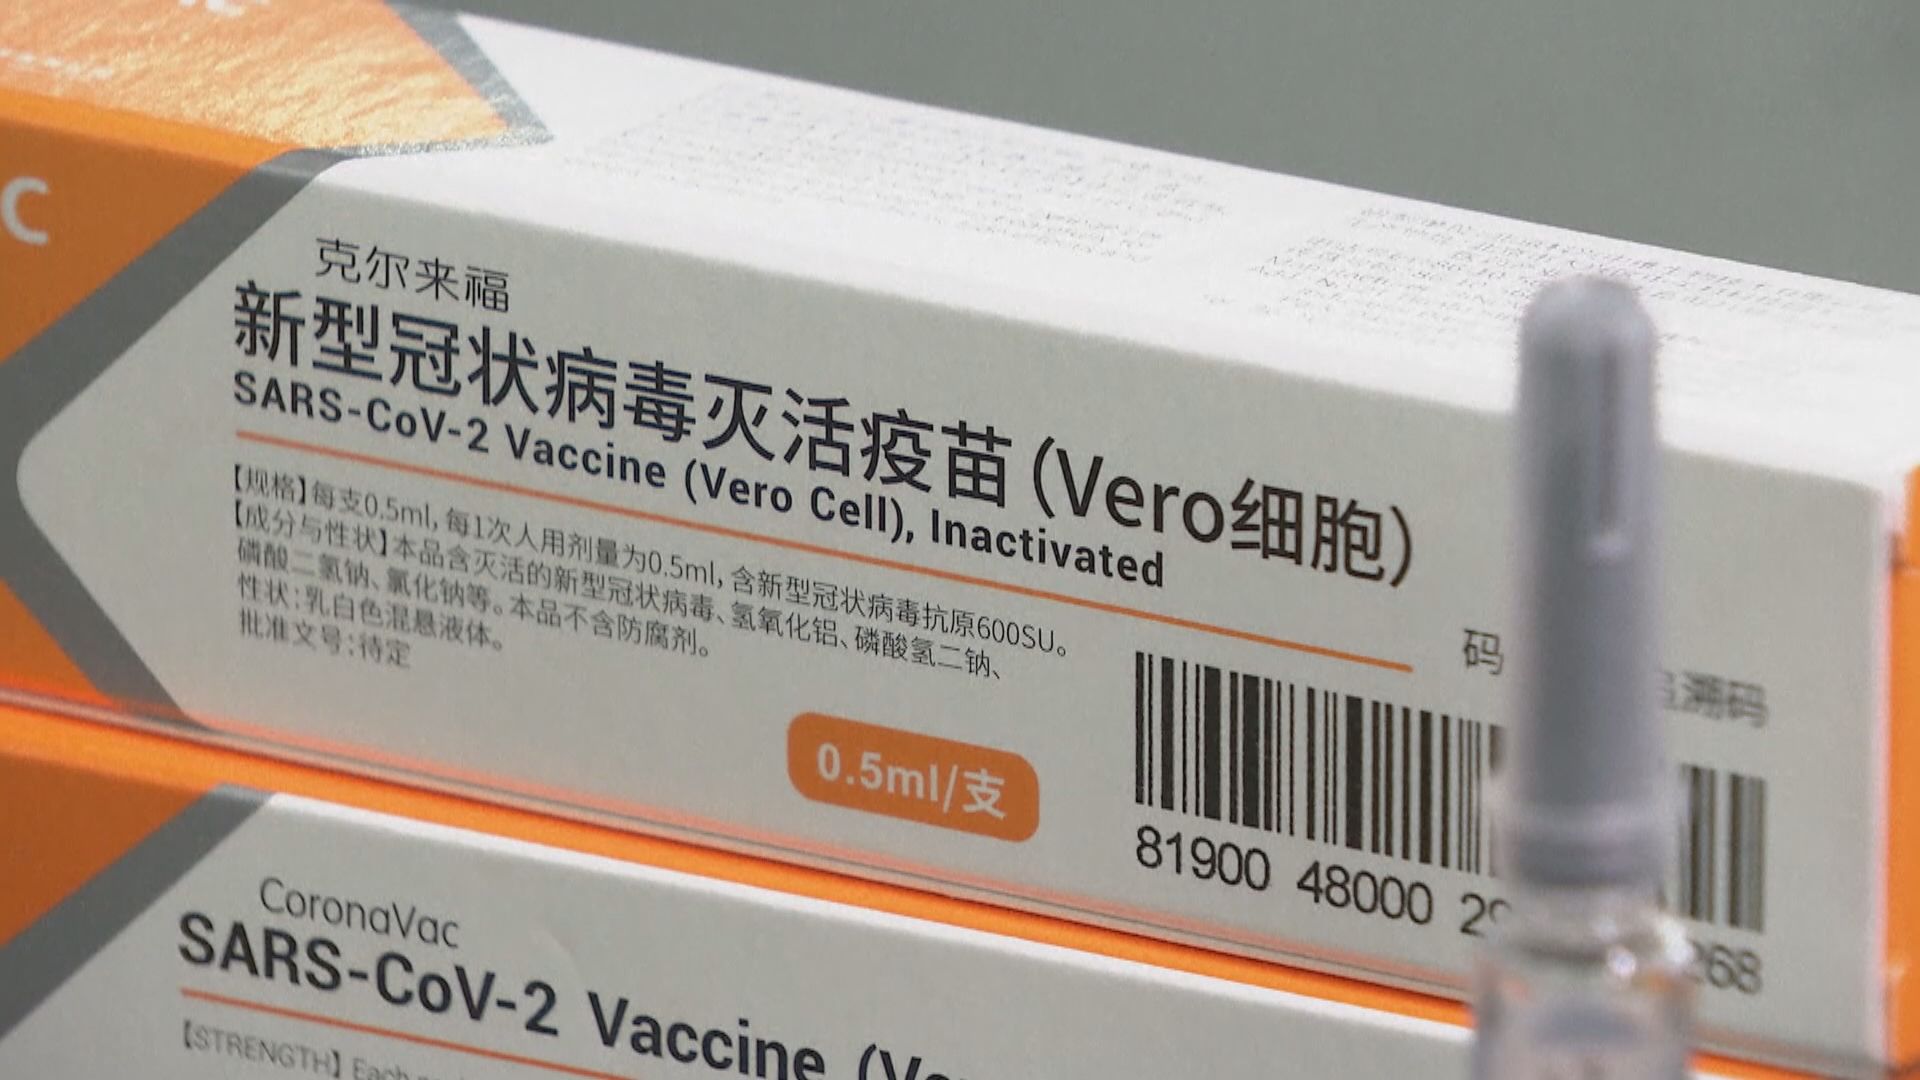 北京科興新冠疫苗據報在巴西完成試驗結果顯示有效